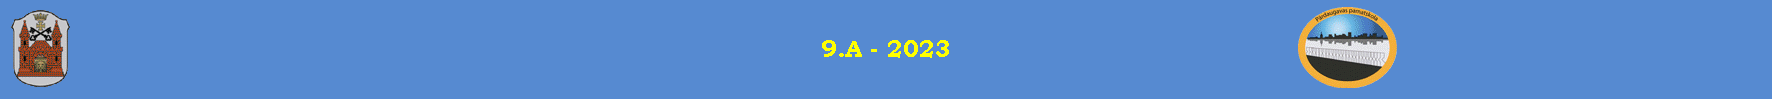 9.A - 2023